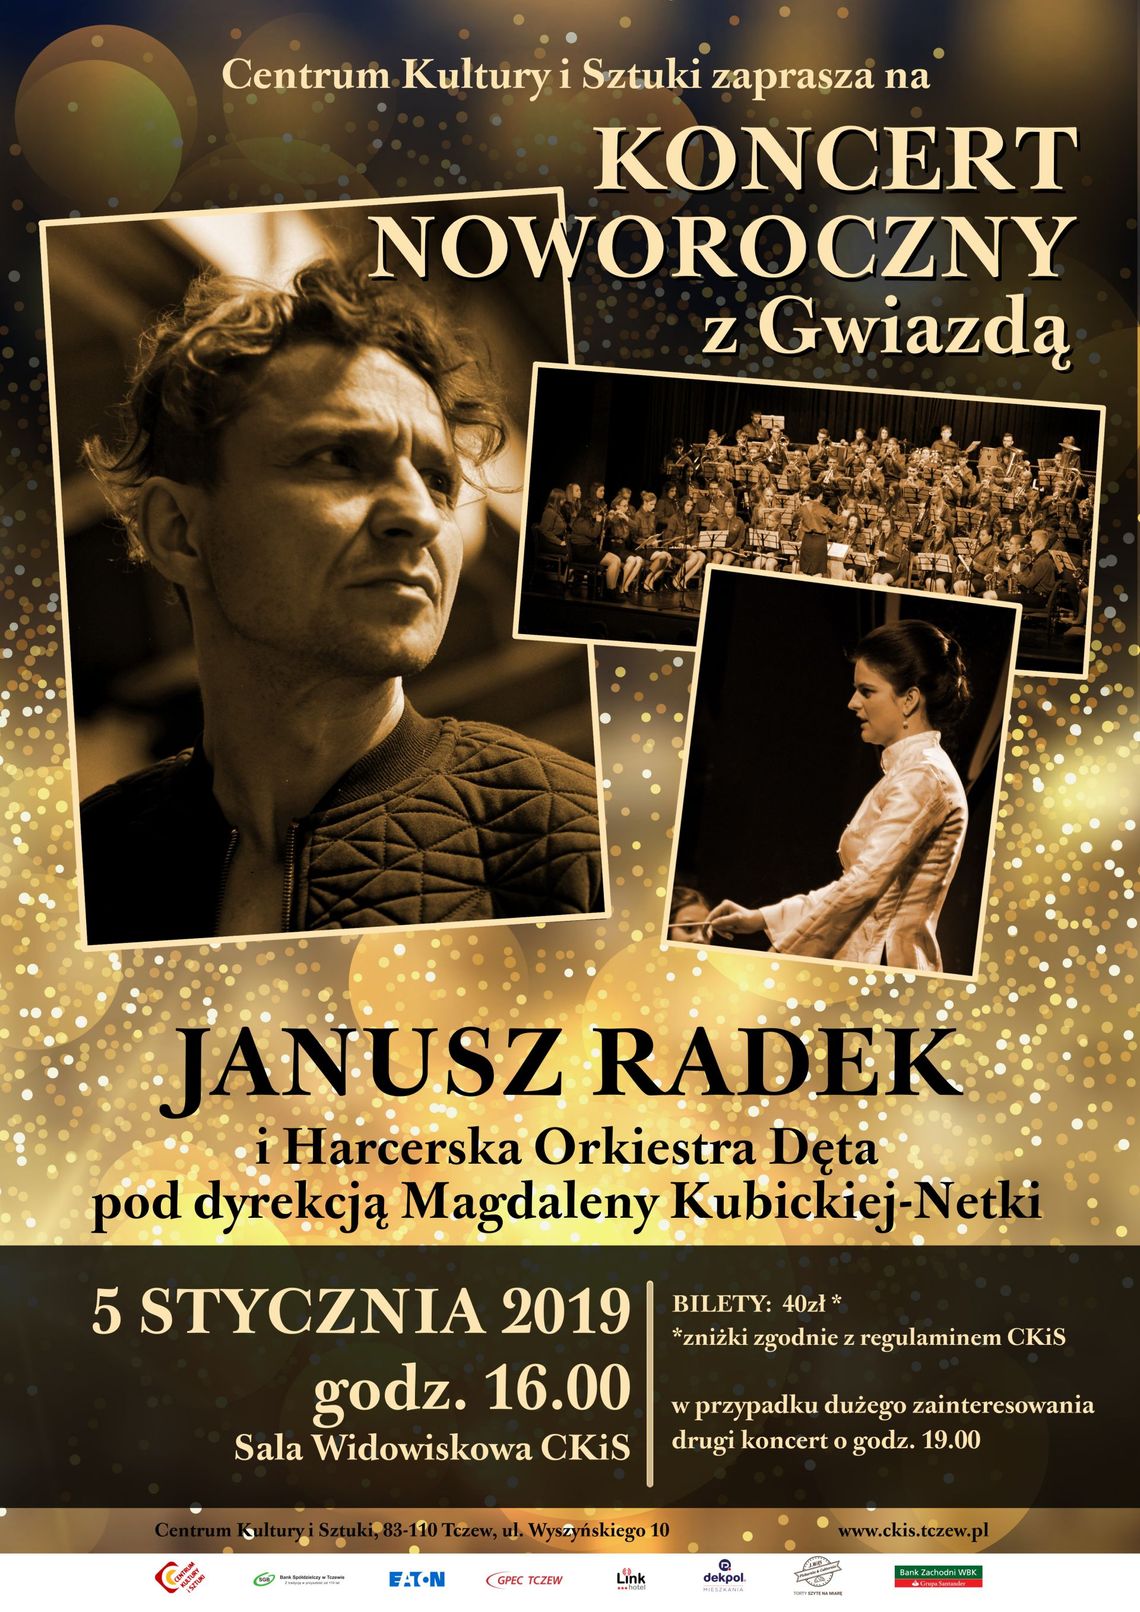 Harcerska Orkiestra Dęta i Janusz Radek - koncert z Gwiazdą 